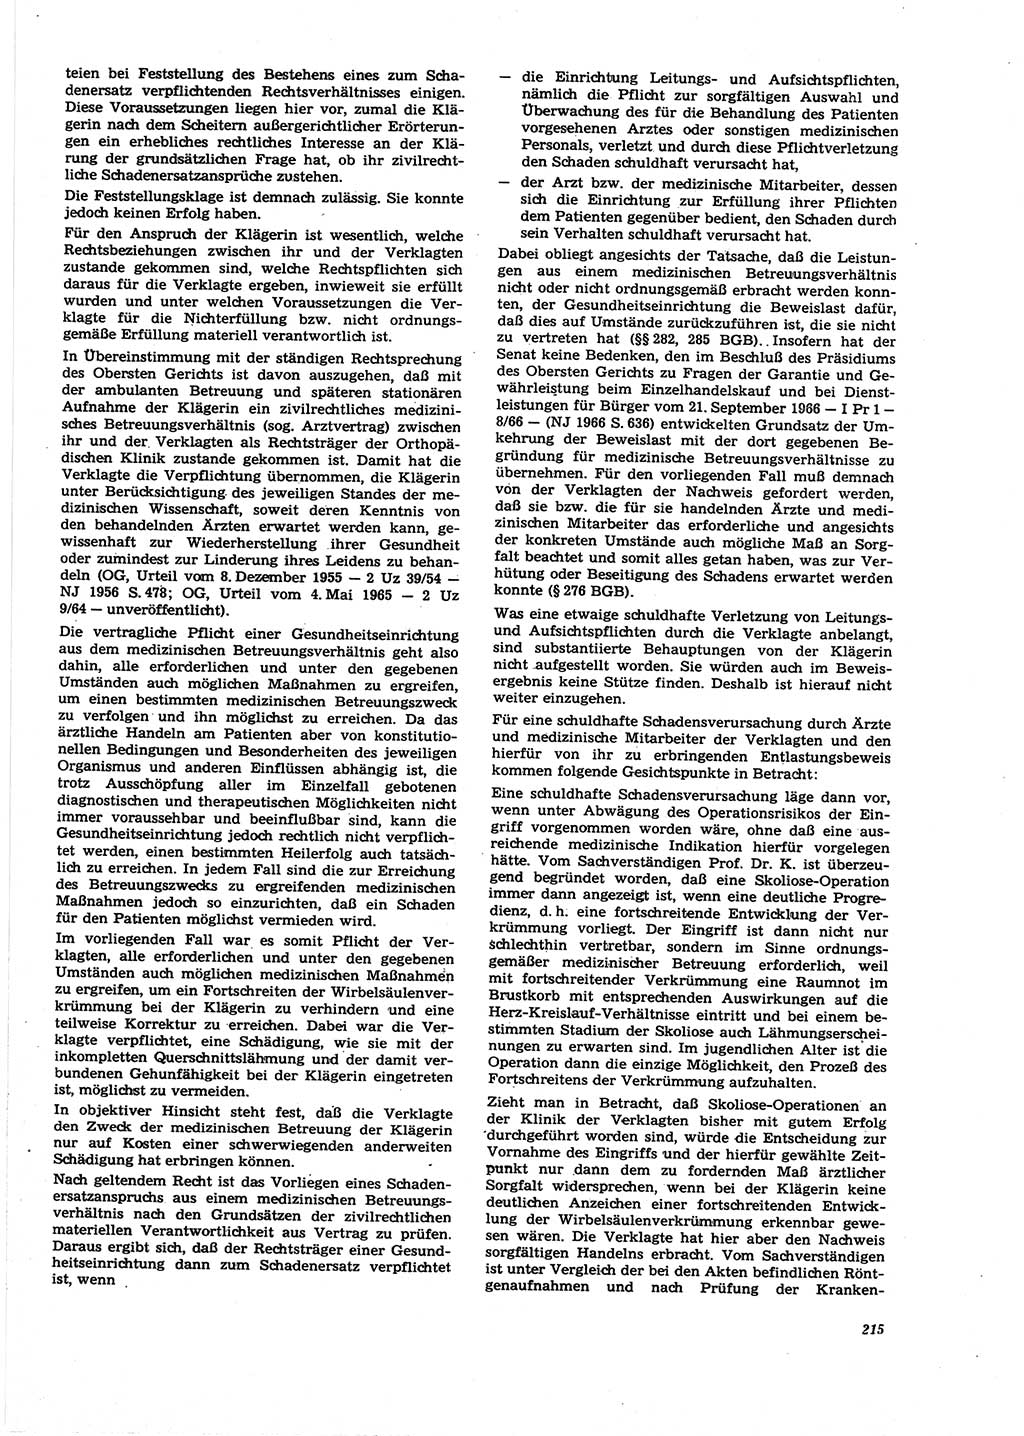 Neue Justiz (NJ), Zeitschrift für Recht und Rechtswissenschaft [Deutsche Demokratische Republik (DDR)], 27. Jahrgang 1973, Seite 215 (NJ DDR 1973, S. 215)